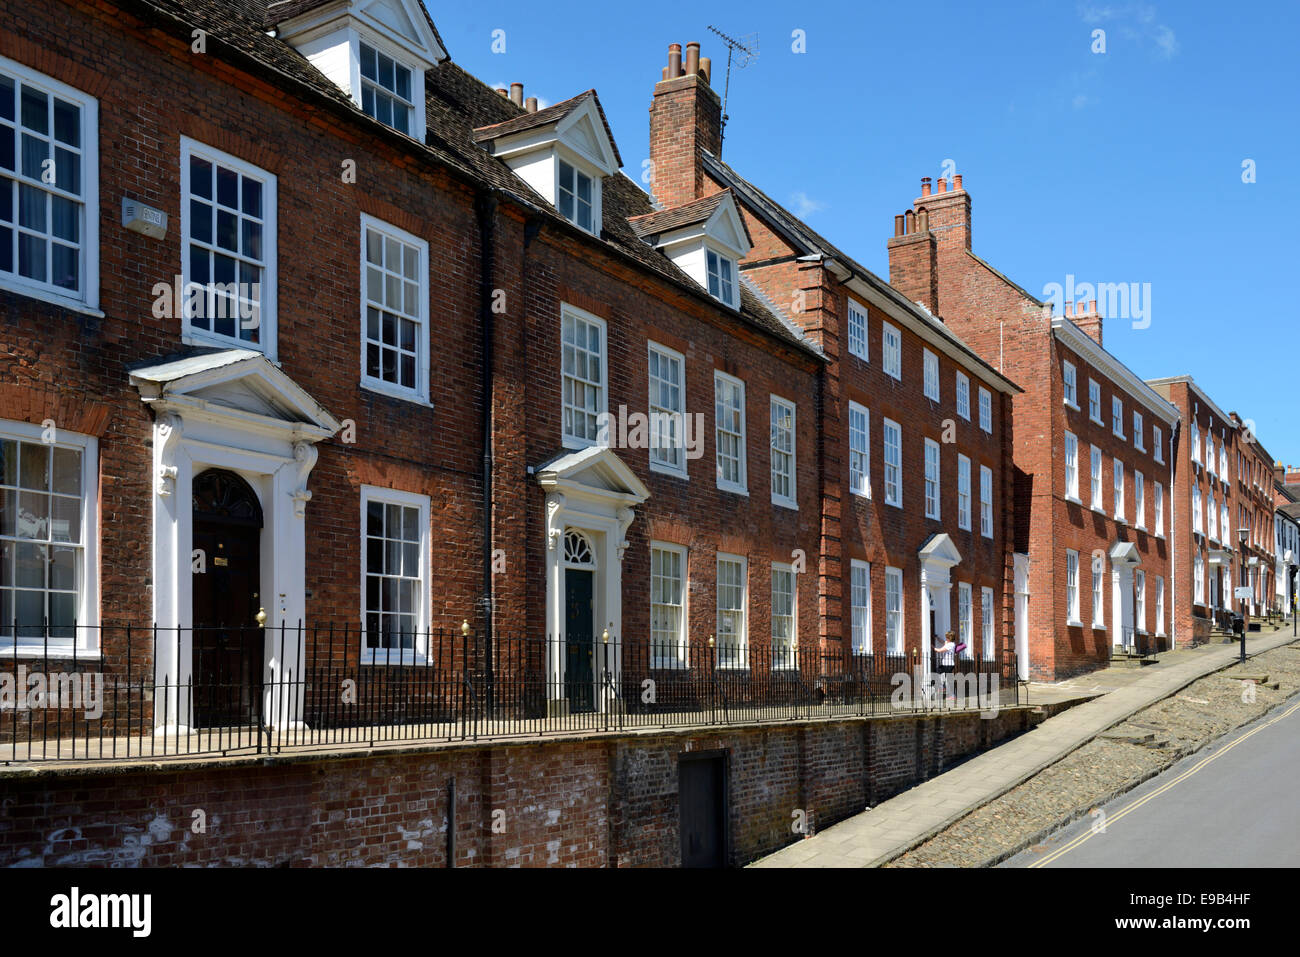 Les bâtiments de style géorgien, rue Large, Ludlow, Shropshire, Angleterre, Royaume-Uni, Europe, Royaume-Uni. Banque D'Images